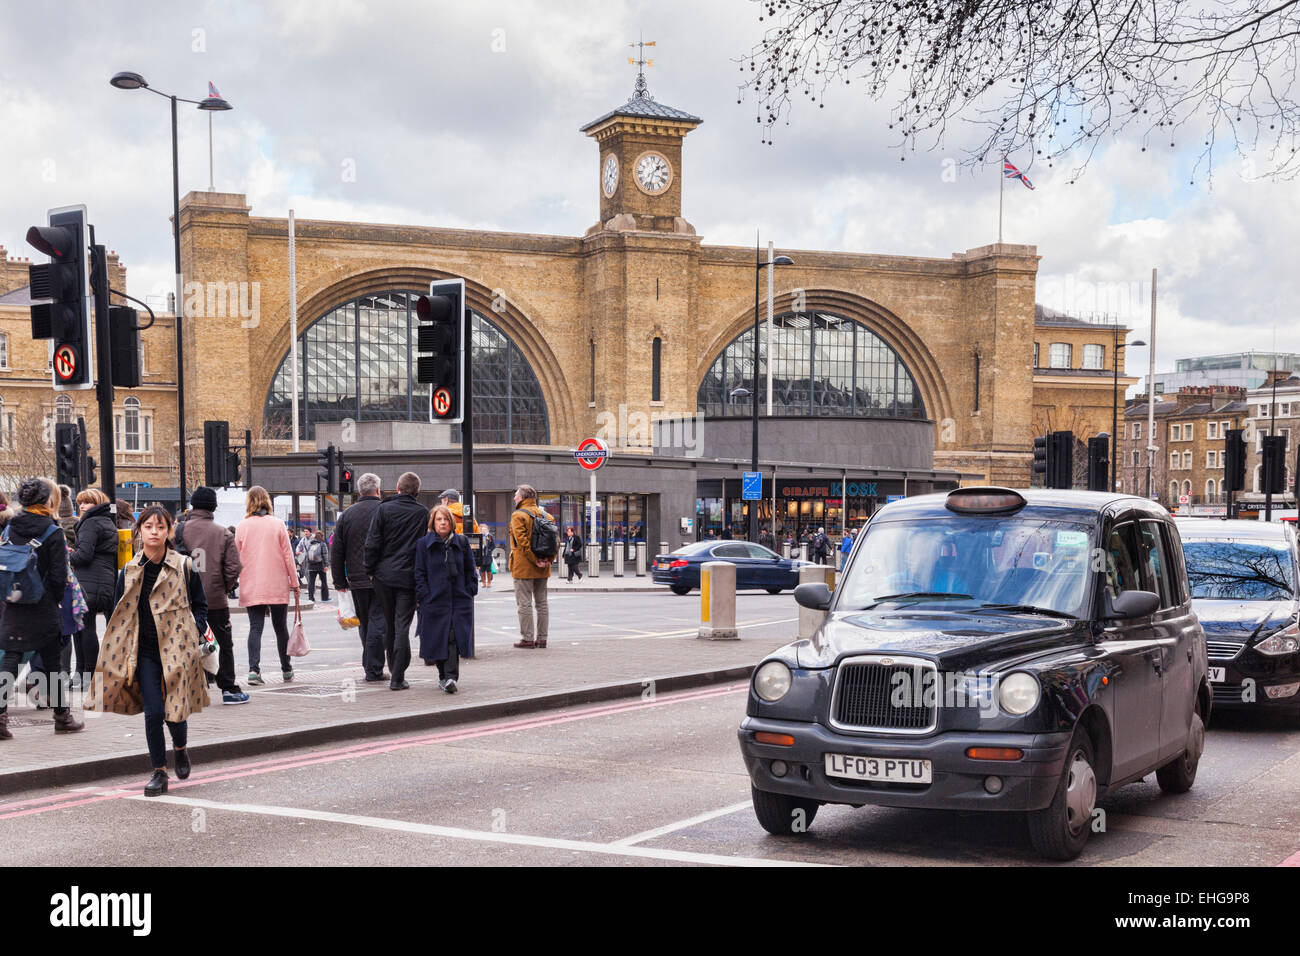 La gare de King's Cross, Londres, Angleterre, avec les taxis, les gens et au trafic sur une journée d'hiver. Banque D'Images